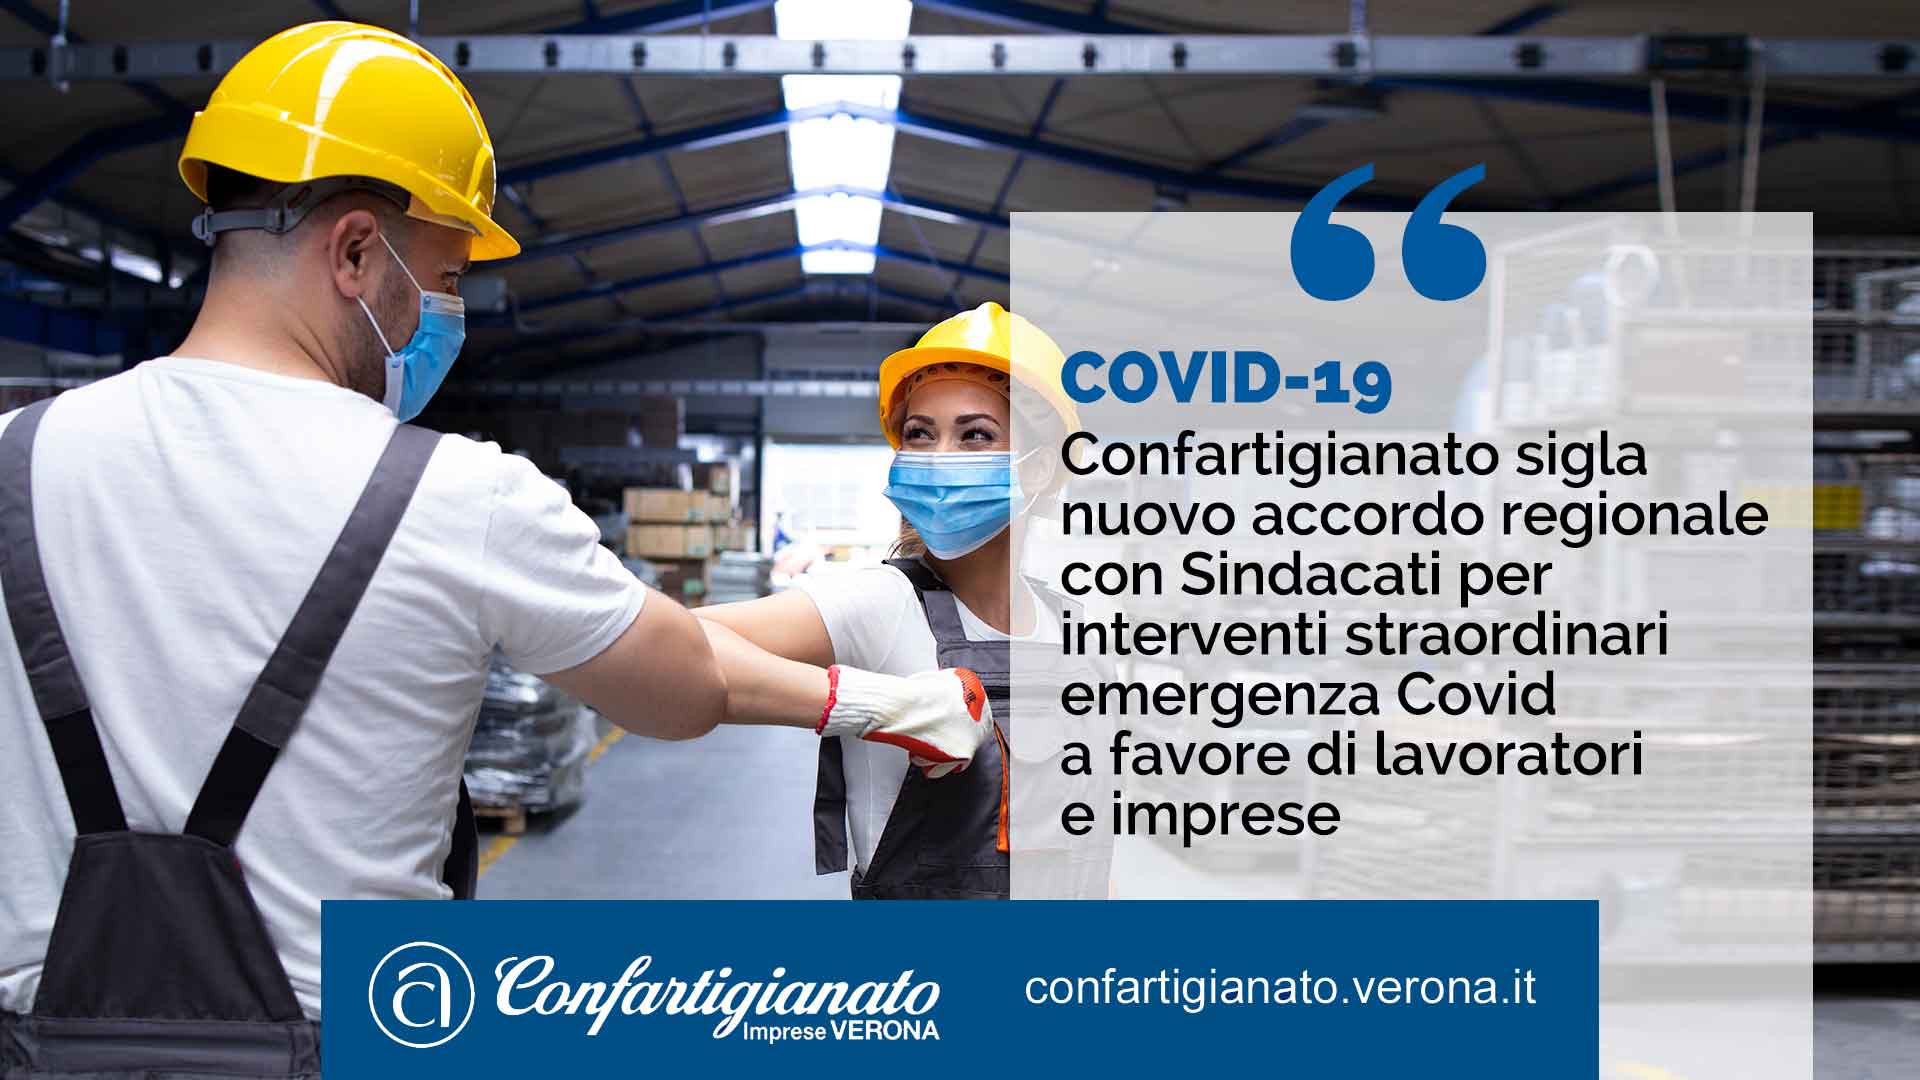 COVID-19 – Confartigianato sigla nuovo accordo regionale con Sindacati per interventi straordinari emergenza Covid a favore di lavoratori e imprese